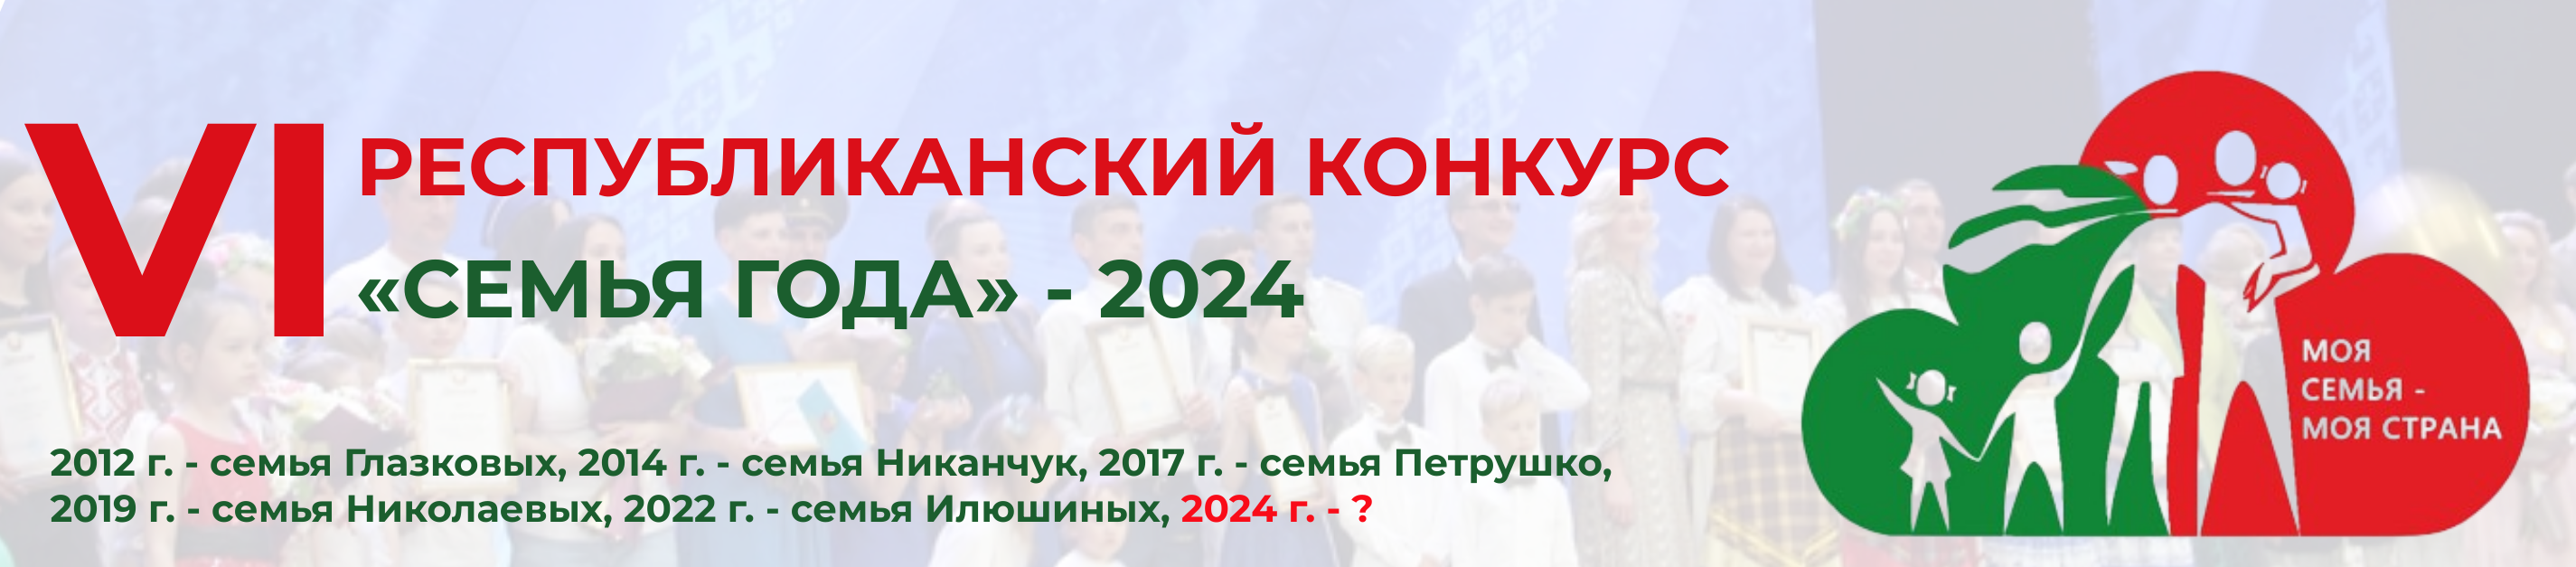 Республиканский конкурс "Семья года" 2024